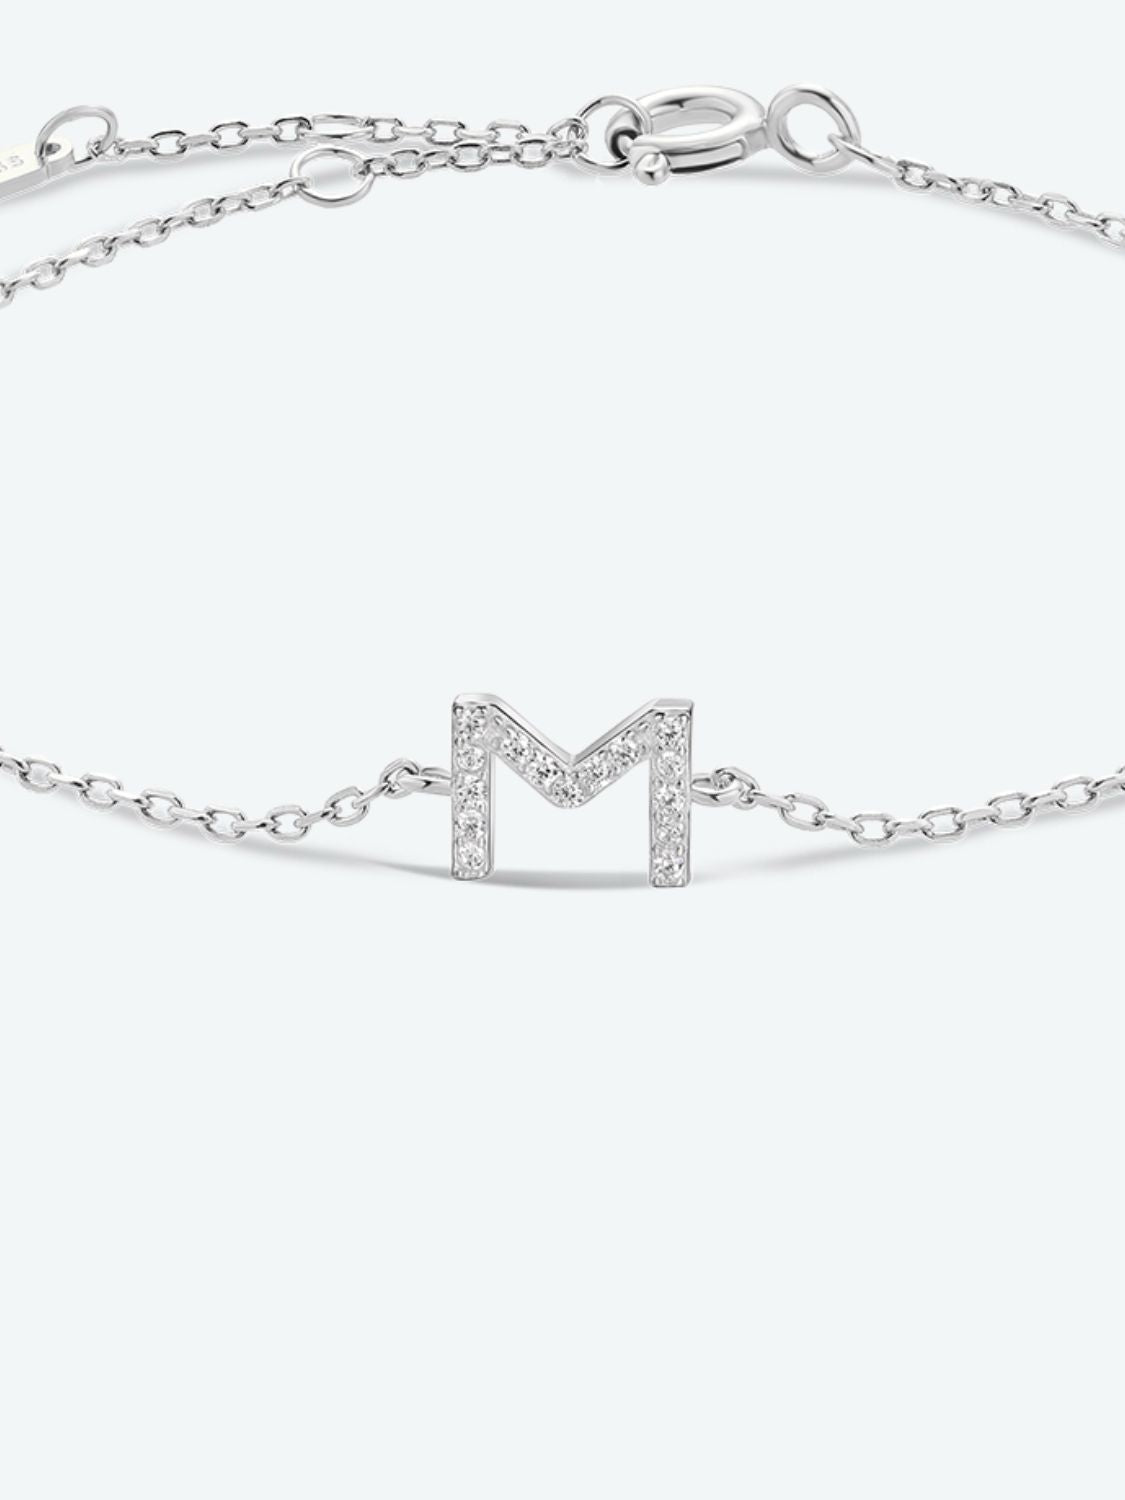 L To P Zircon 925 Sterling Silver Bracelet - Women’s Jewelry - Bracelets - 12 - 2024